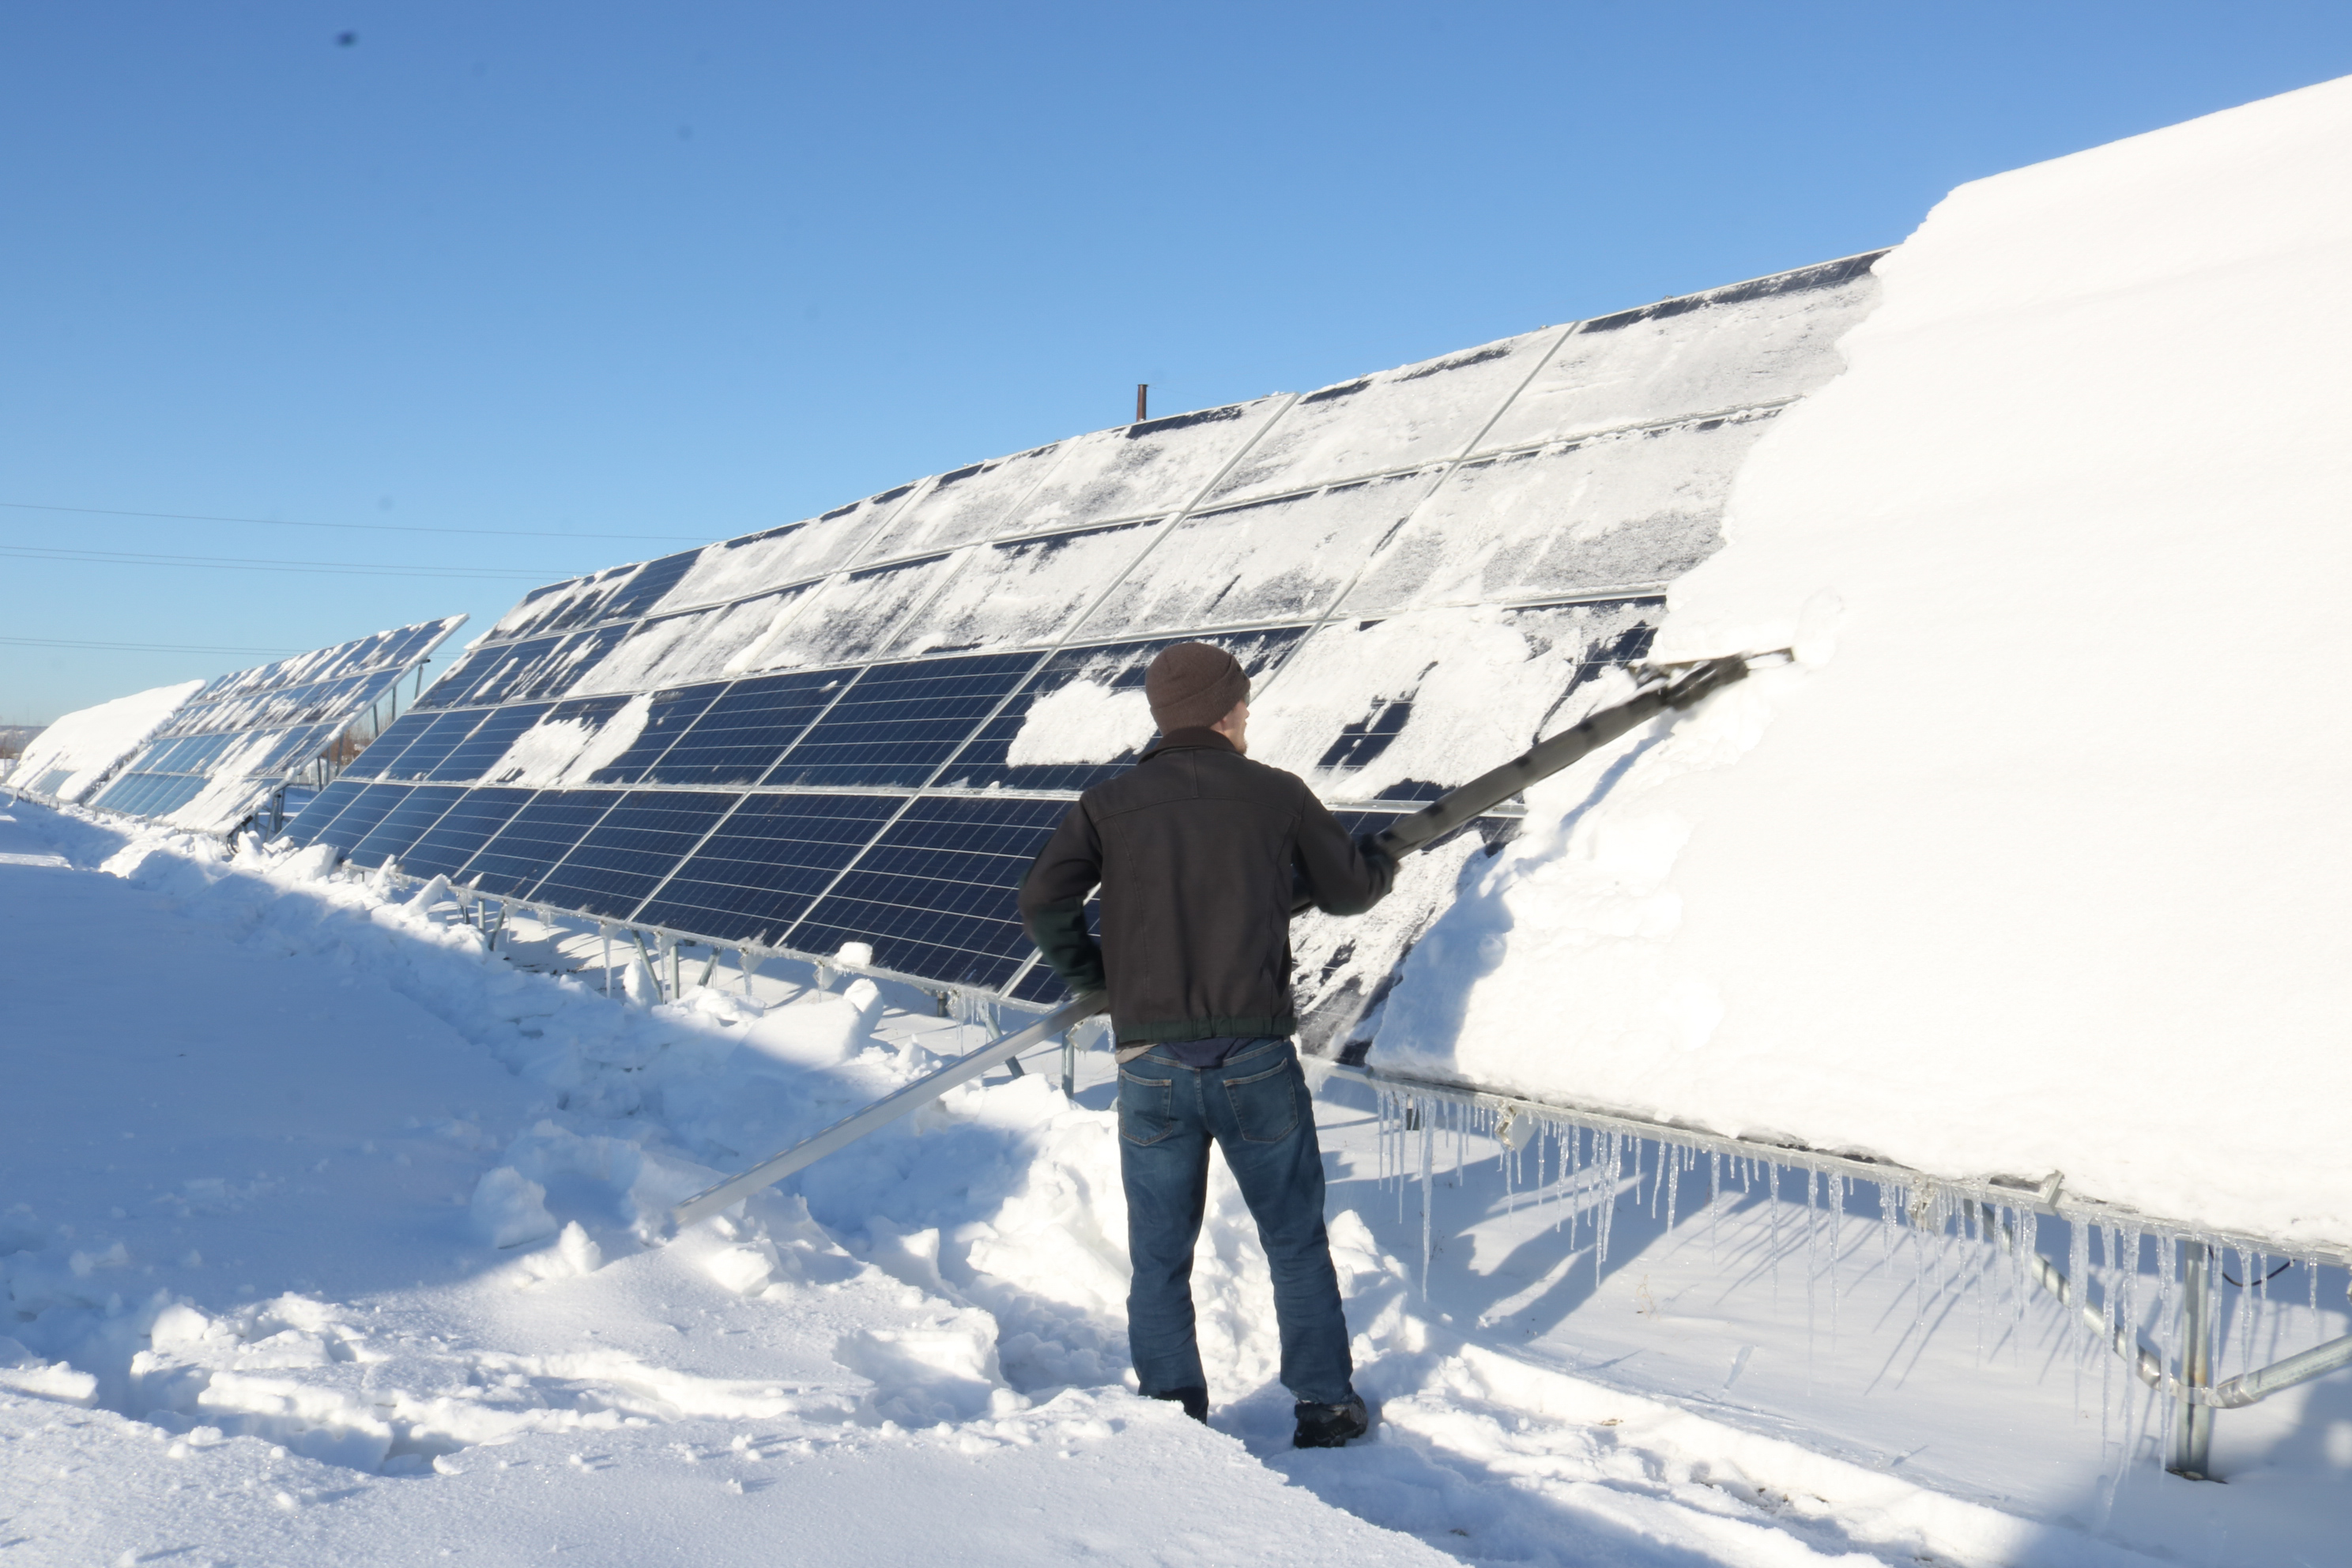 BBC Features Alaska’s Solar Energy